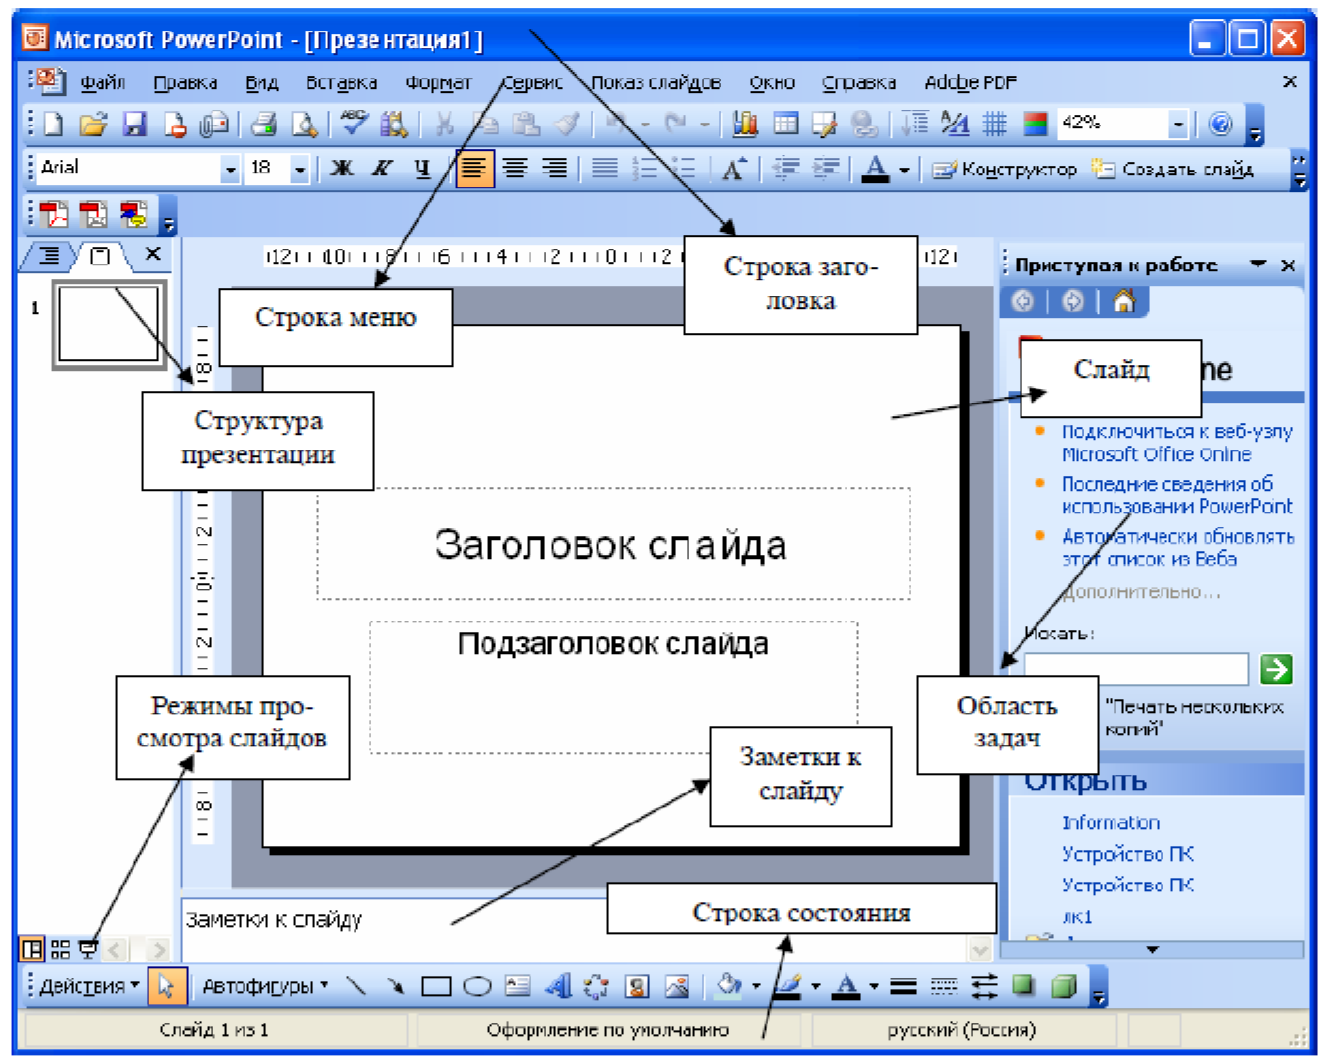 Структура окна MS POWERPOINT. Панель инструментов повер поинт 2007. Окно программы MS POWERPOINT. Основные элементы окна повер поинт. Павер поінт